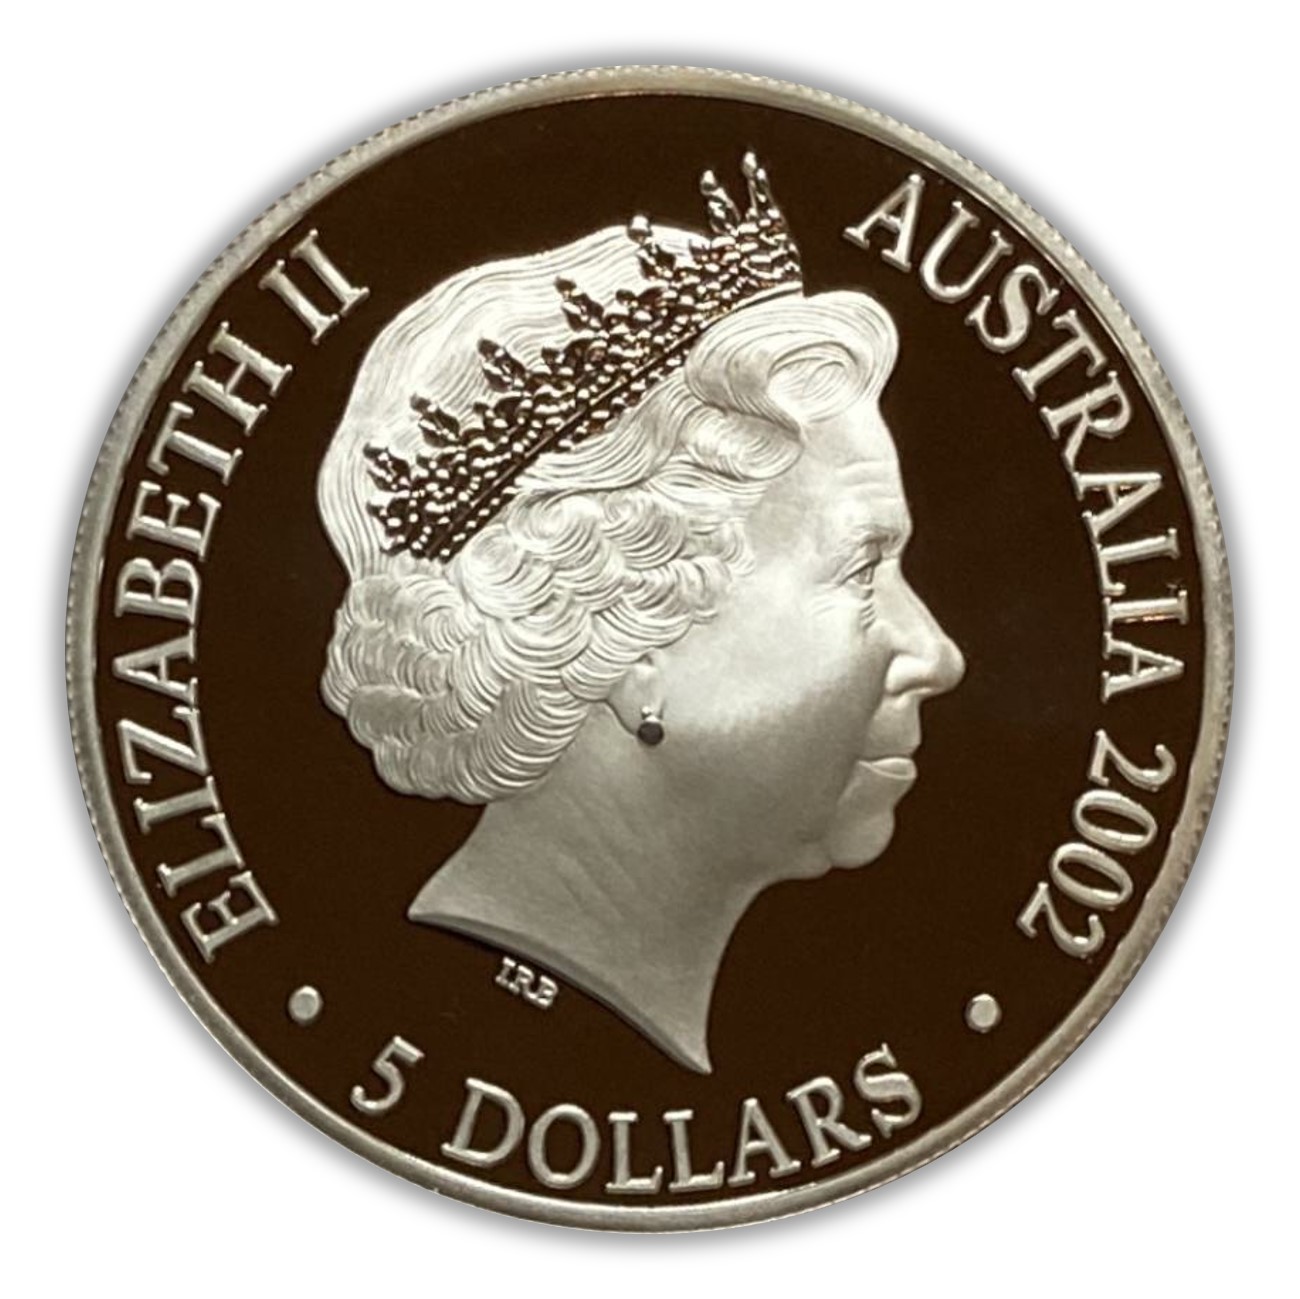 2002 The Queen Mother 1 oz Silver Coin